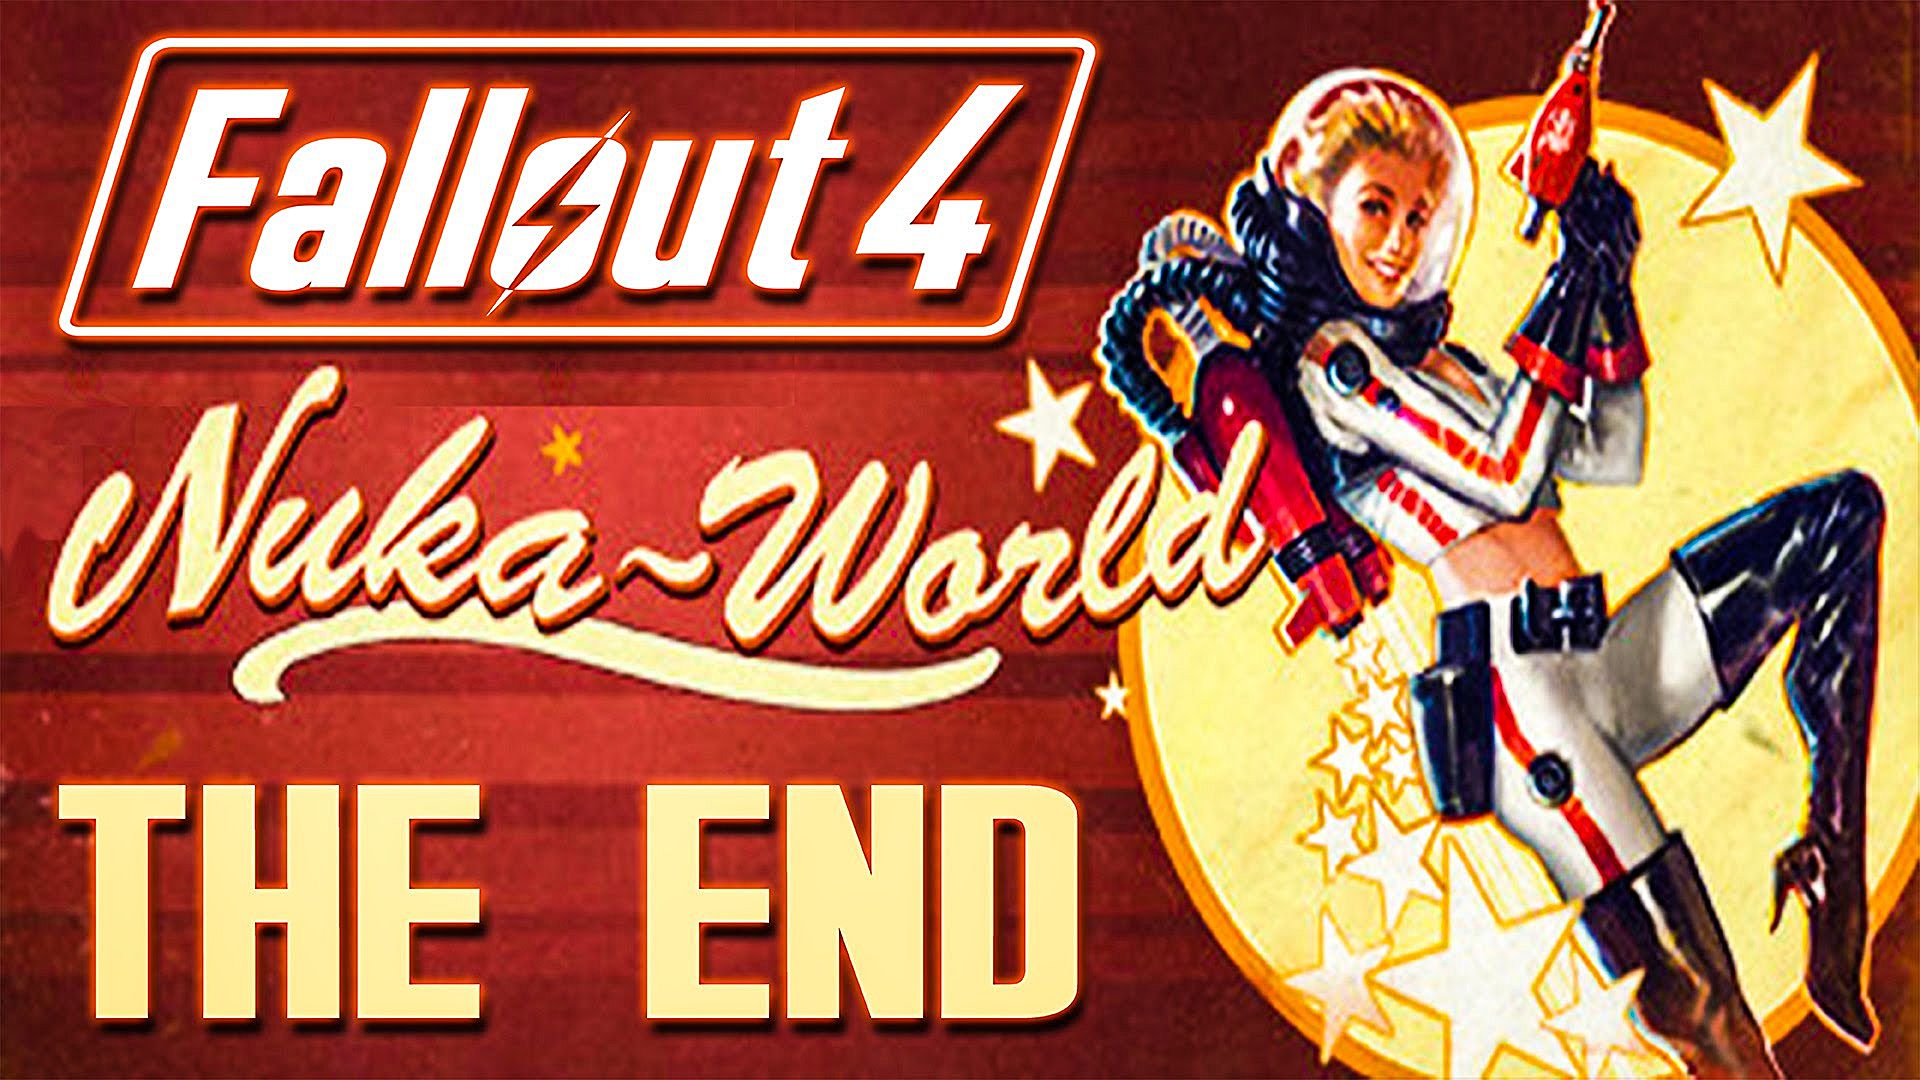 Fallout 4 nuka world убить всех рейдеров фото 73